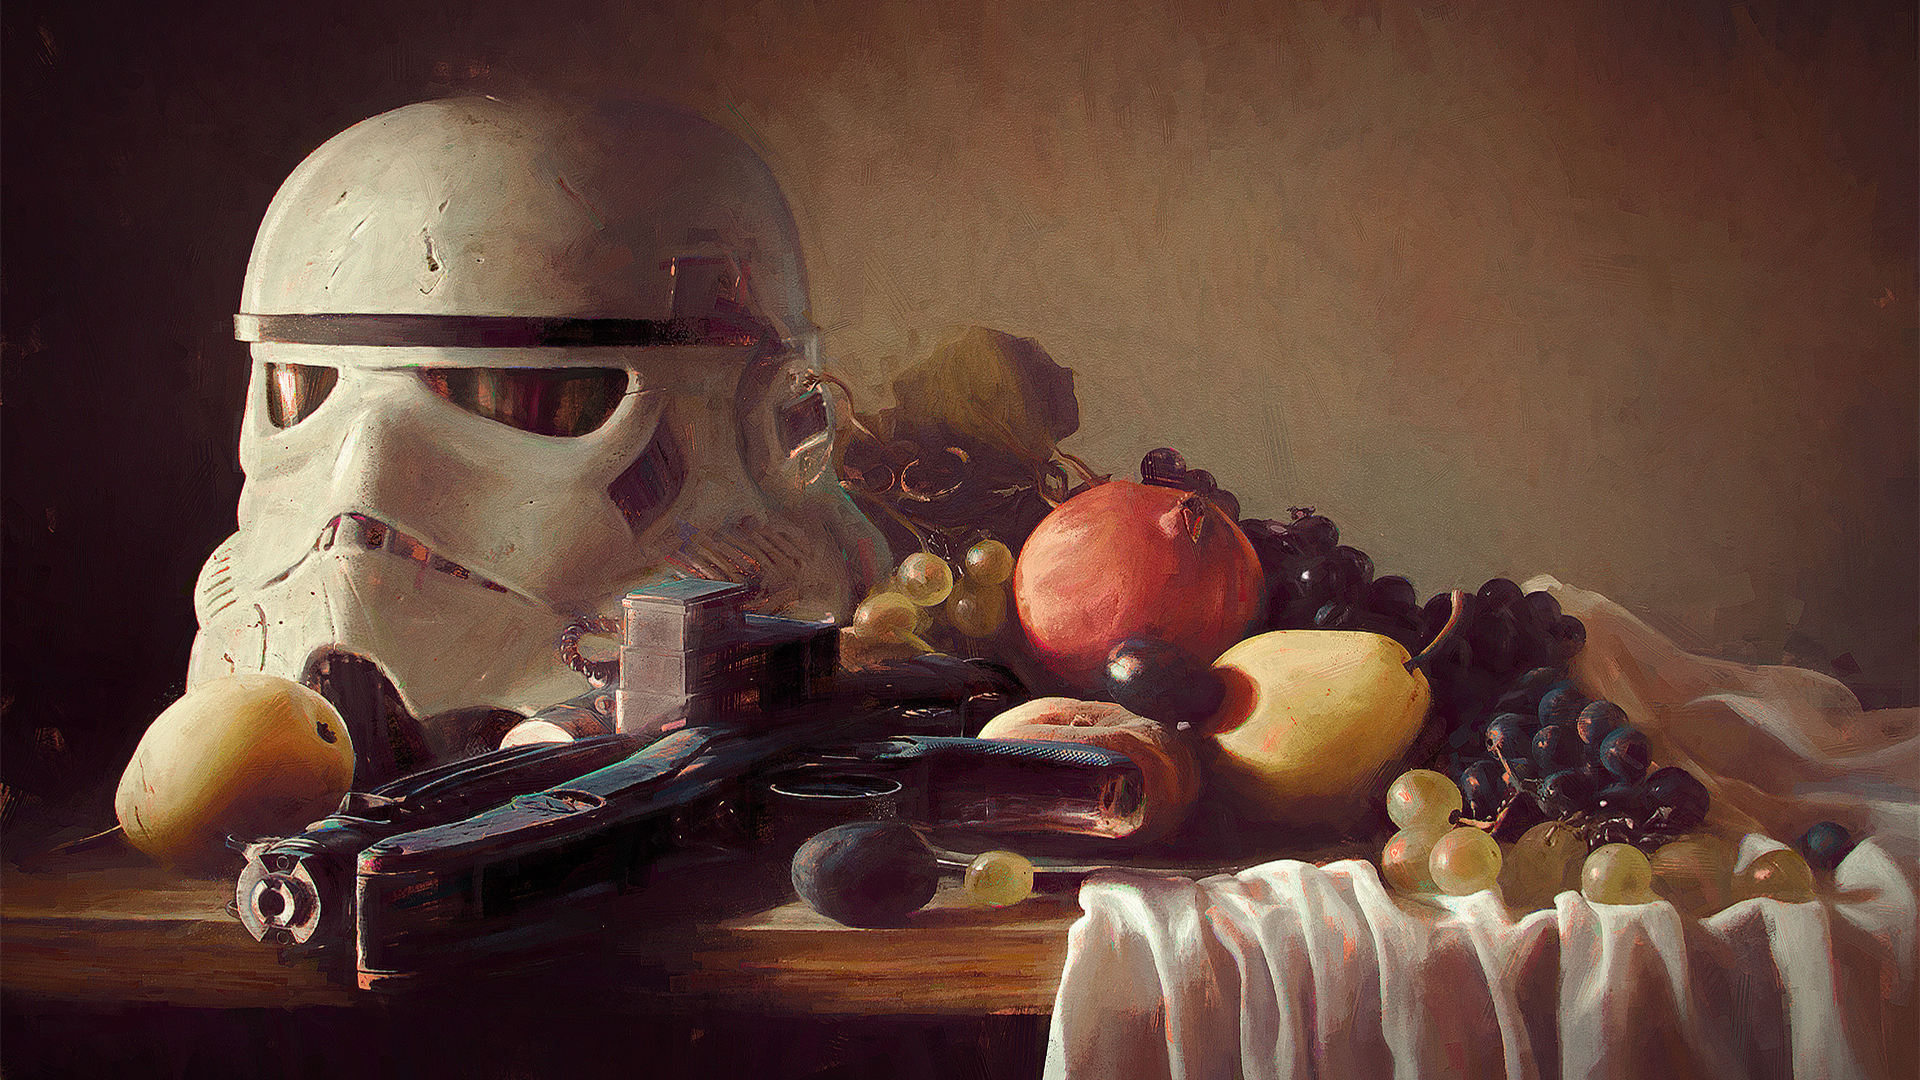 Still Life Digital Art Artwork Fruit Stormtrooper Star Wars Blaster Painting Humor 1920x1080